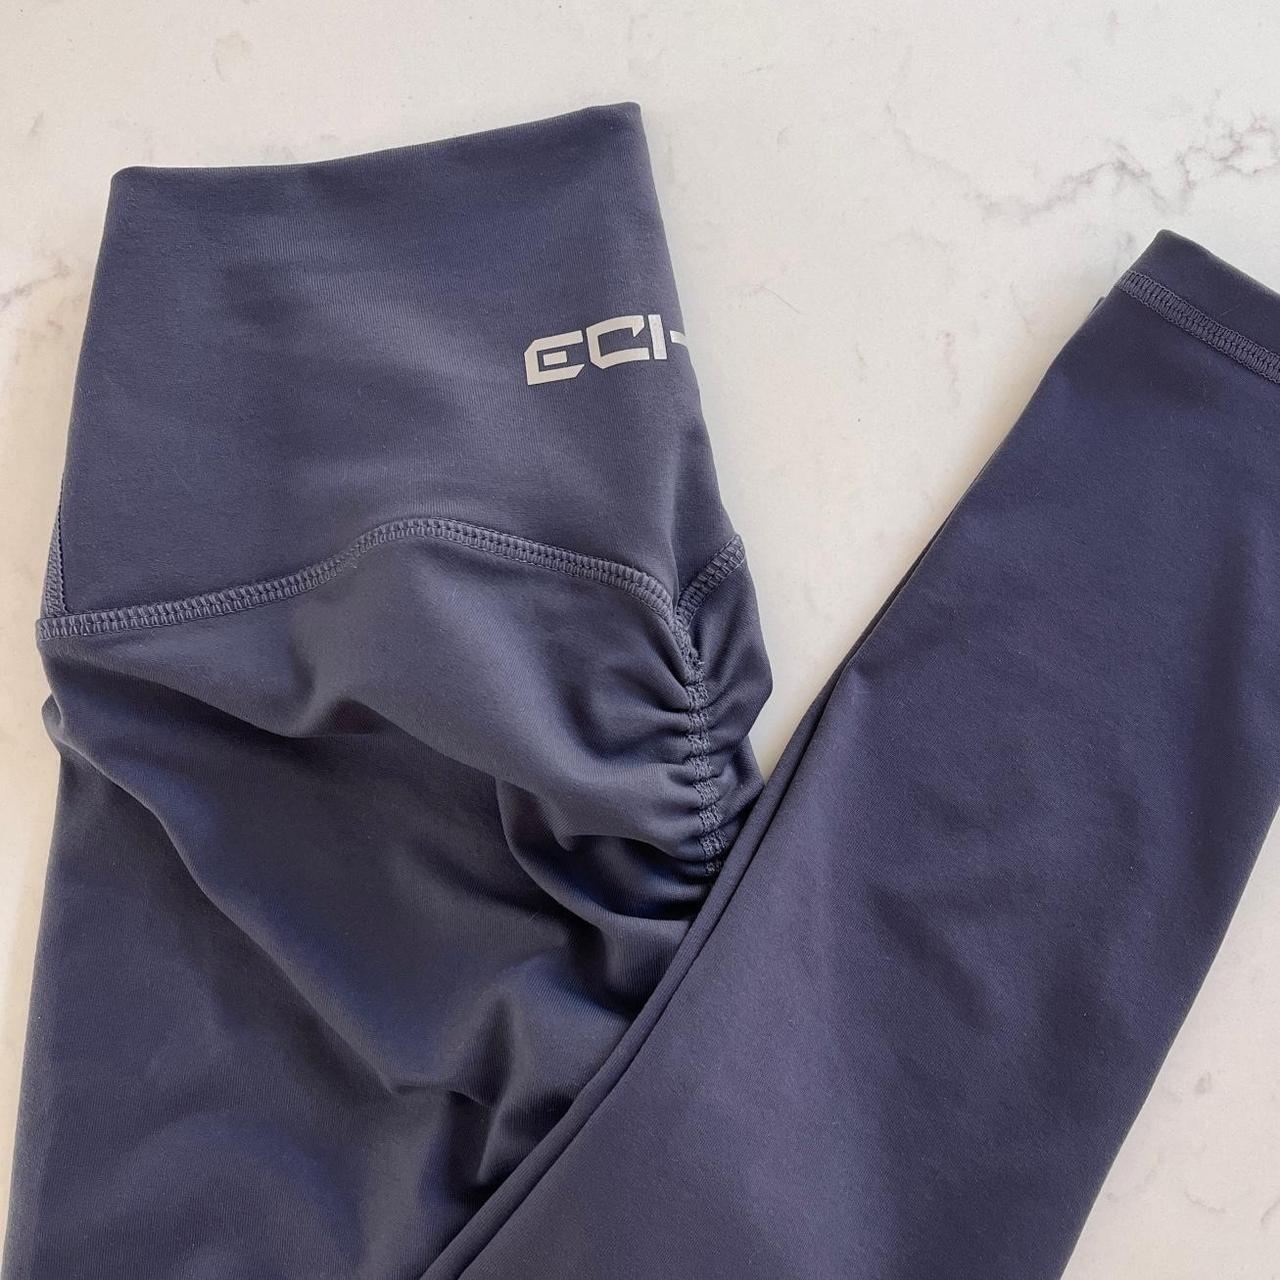 ECHT apparel scrunch leggings in blue steel. Very - Depop